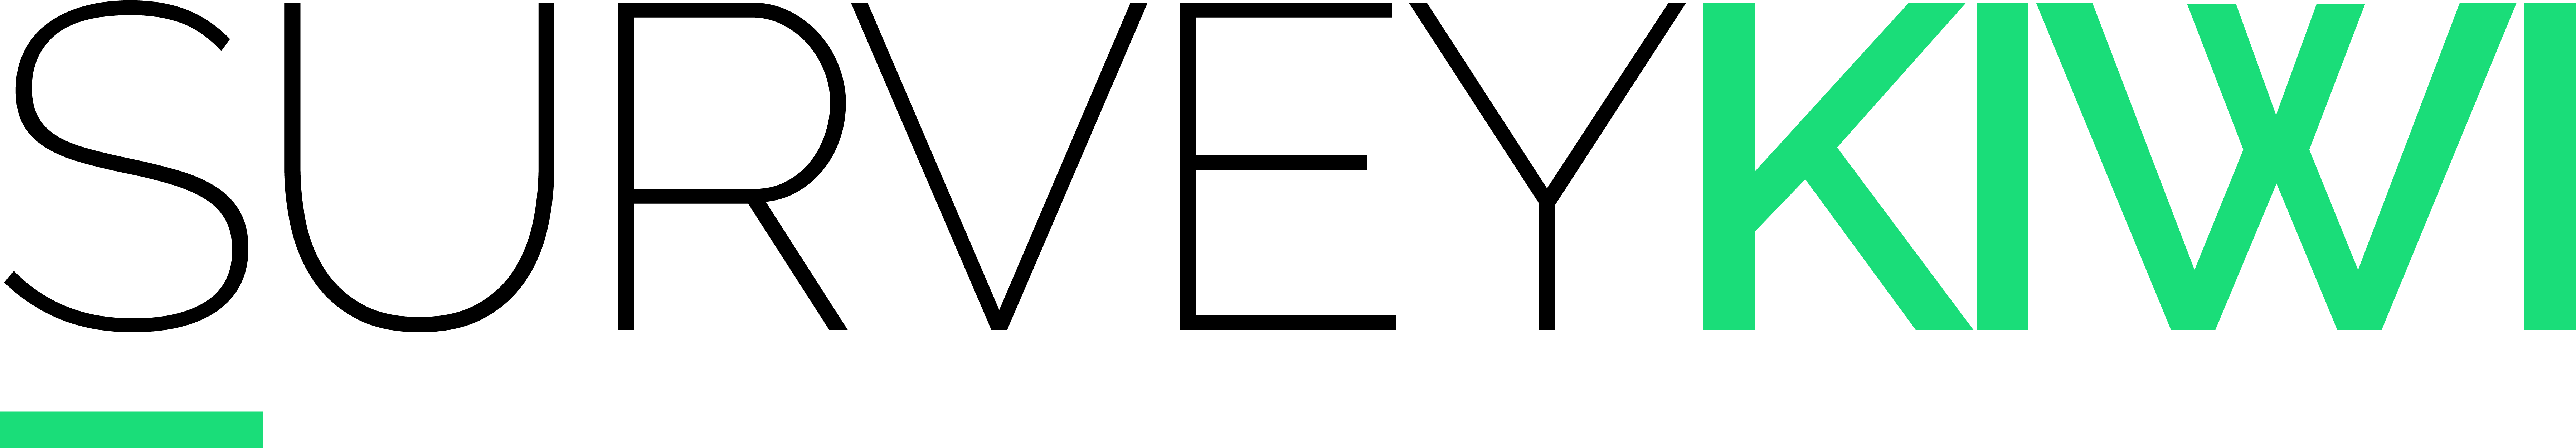 Survey Kiwi Logo